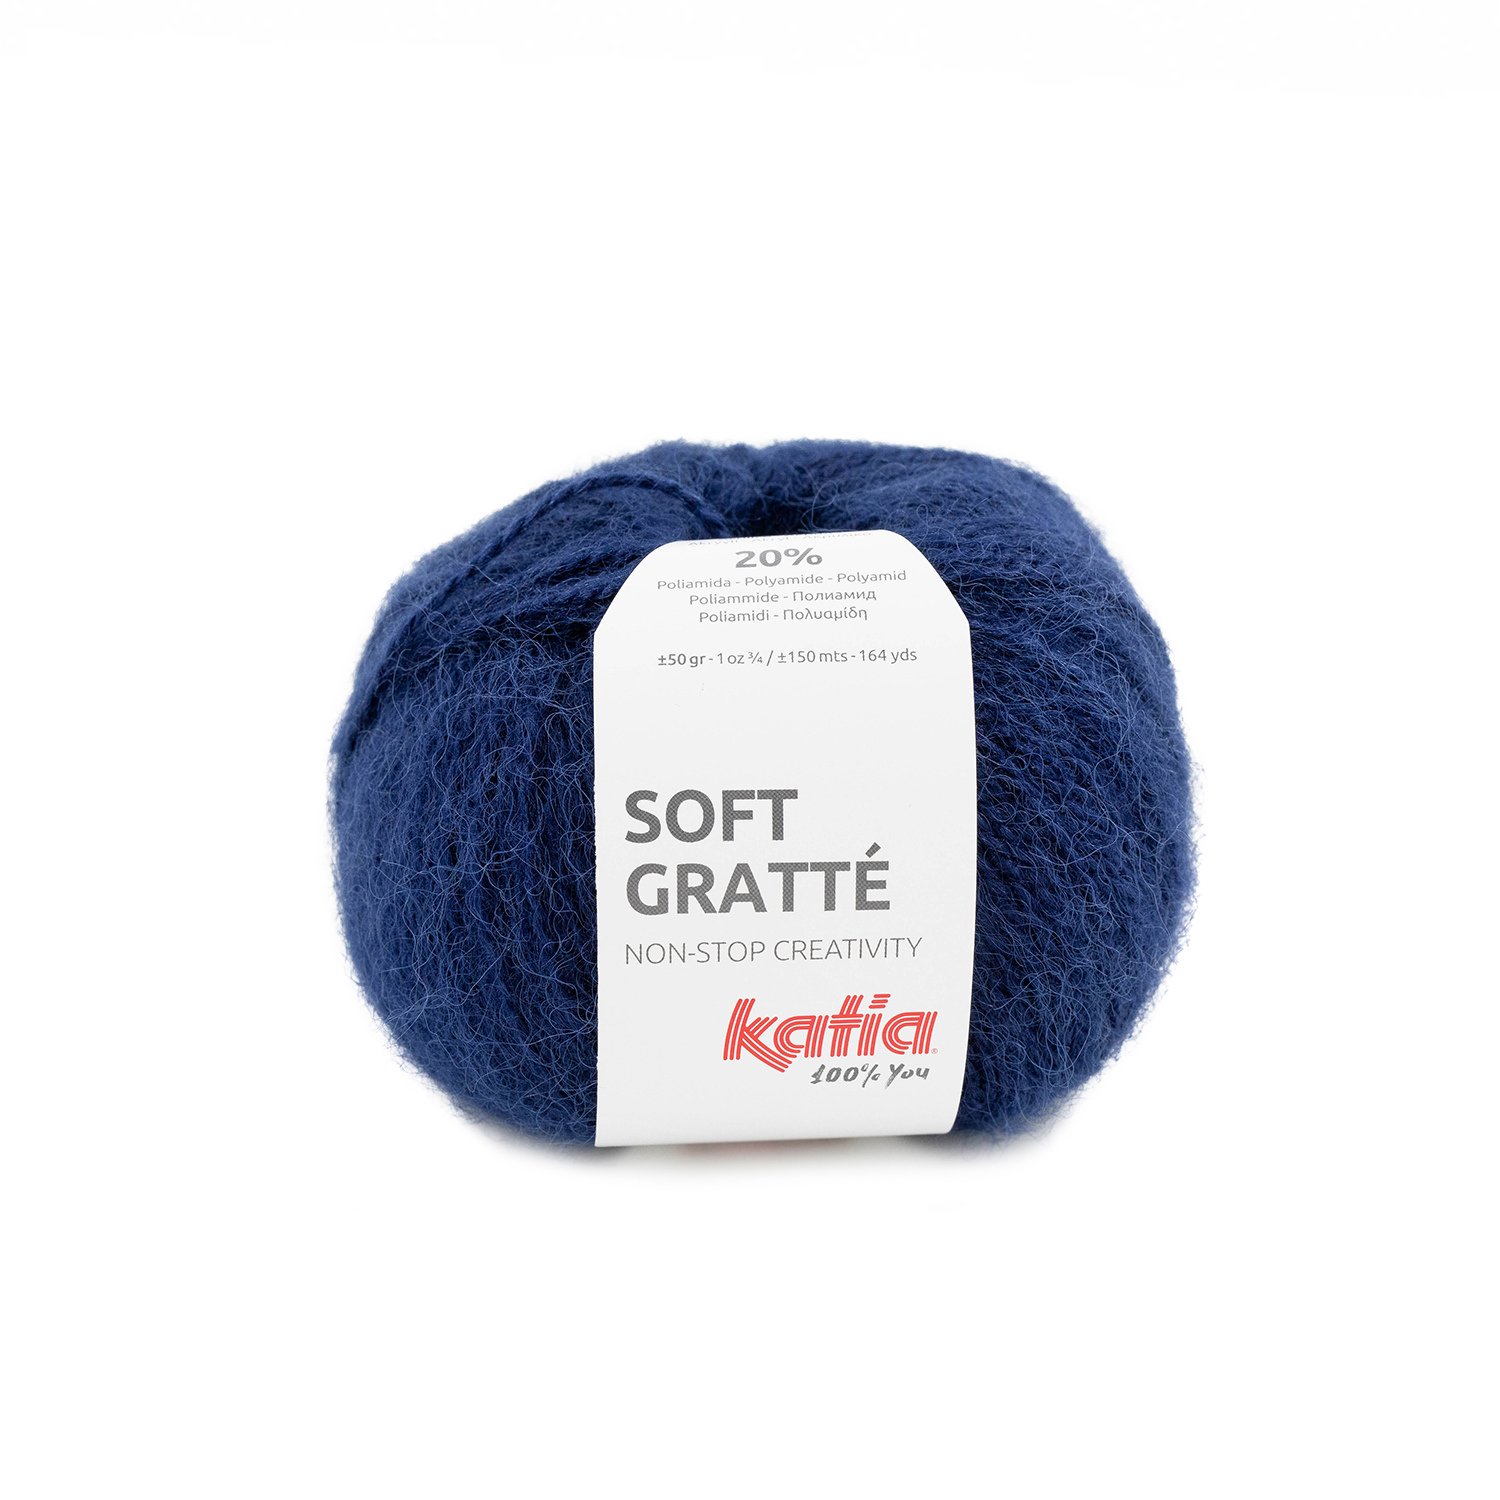 75 laine-fil-softgratte-tricoter-acrylique-polyamide-bleu-fonce-automne-hiver-katia-75-fhd